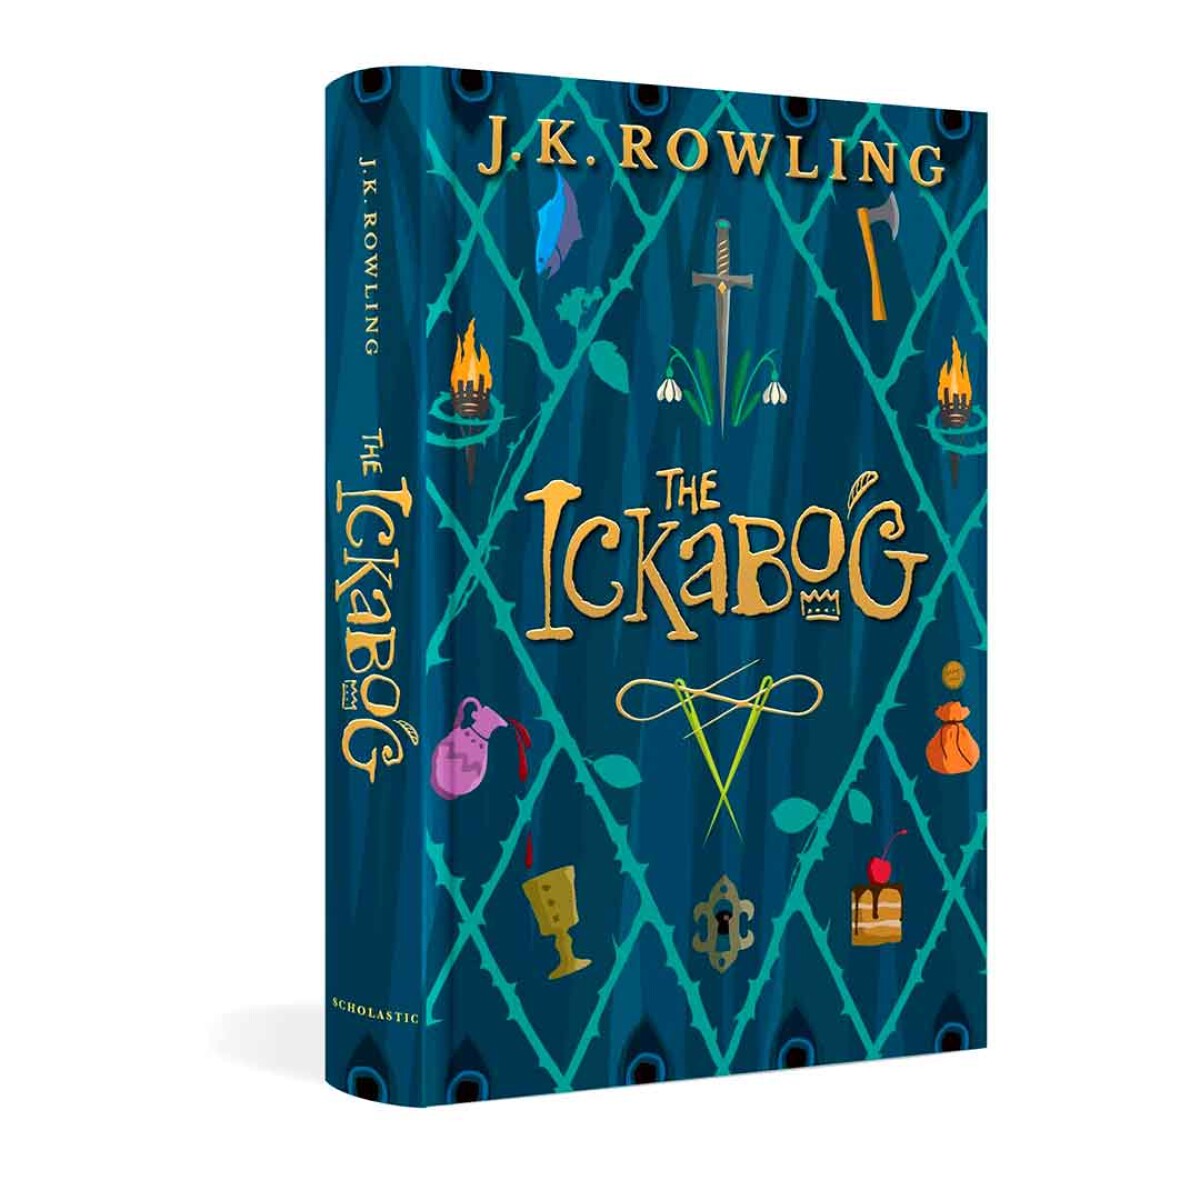 Libro El Ickabog by J.K Rowling - 001 